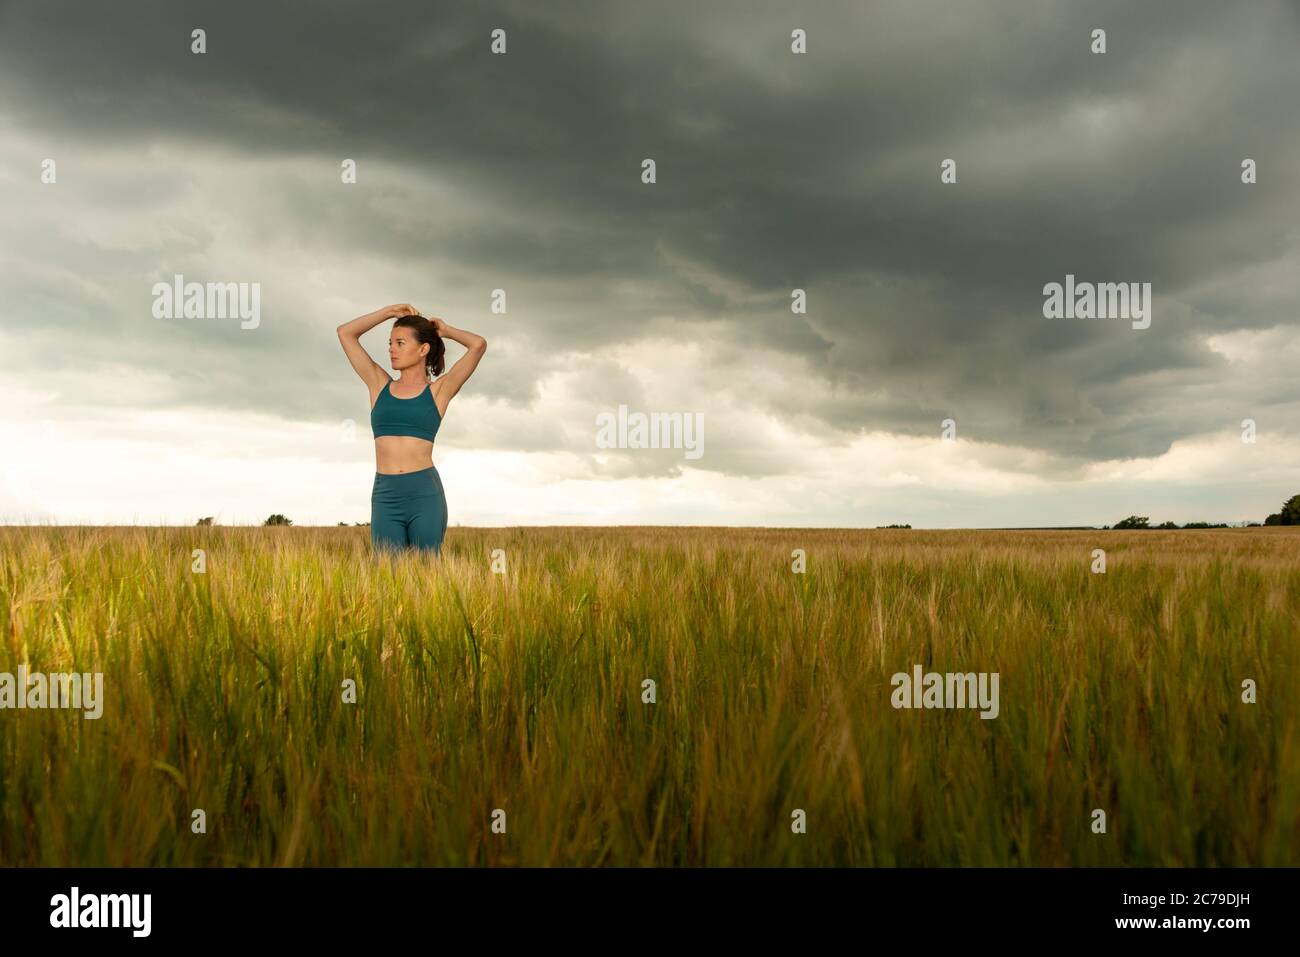 Sportliche Frau bindet ihre Haare zurück vor dem Training, dramatische Himmel und Landschaft. Stockfoto